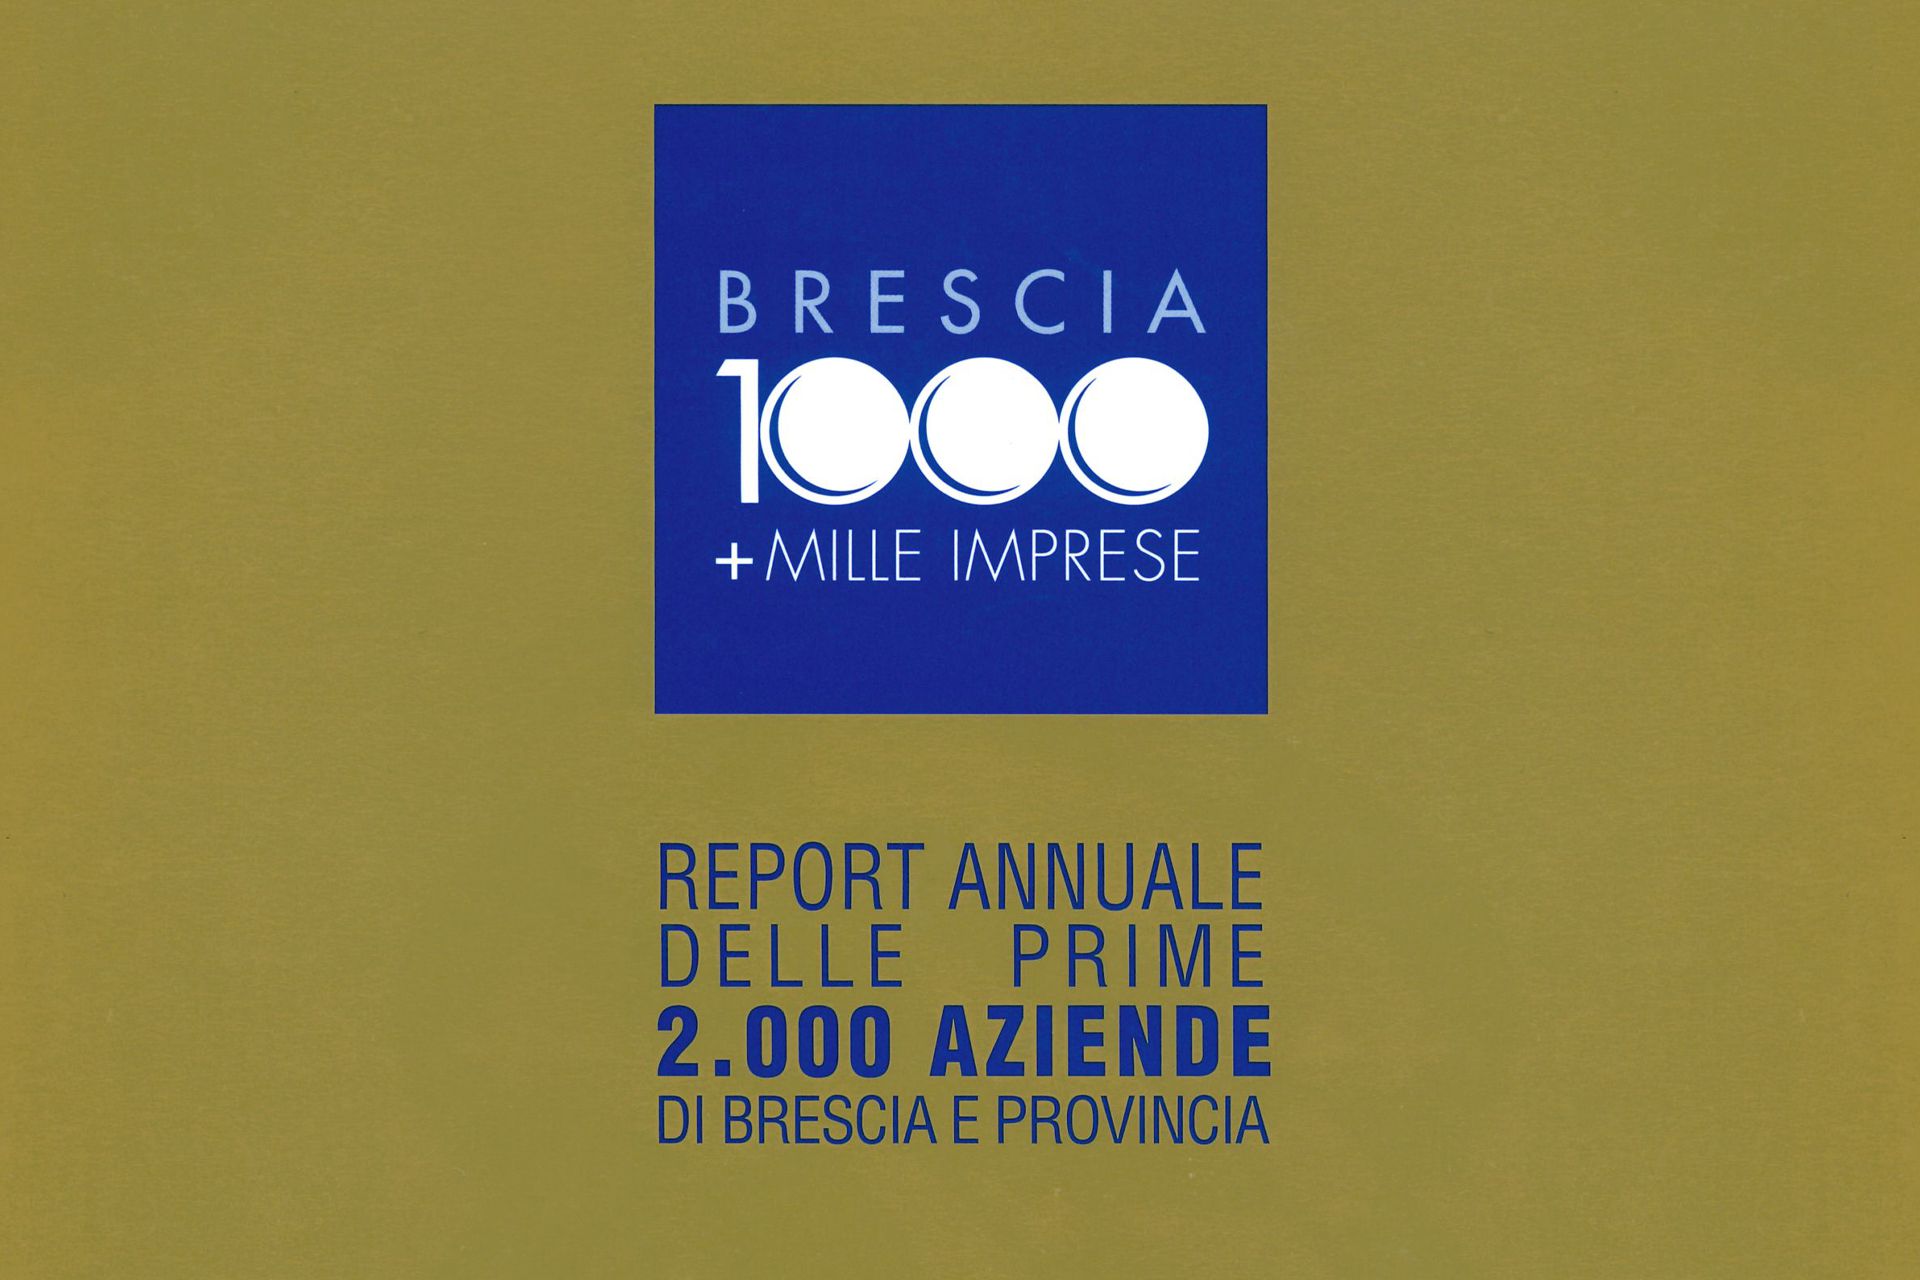 brescia-1000-imprese-2021-redazionale